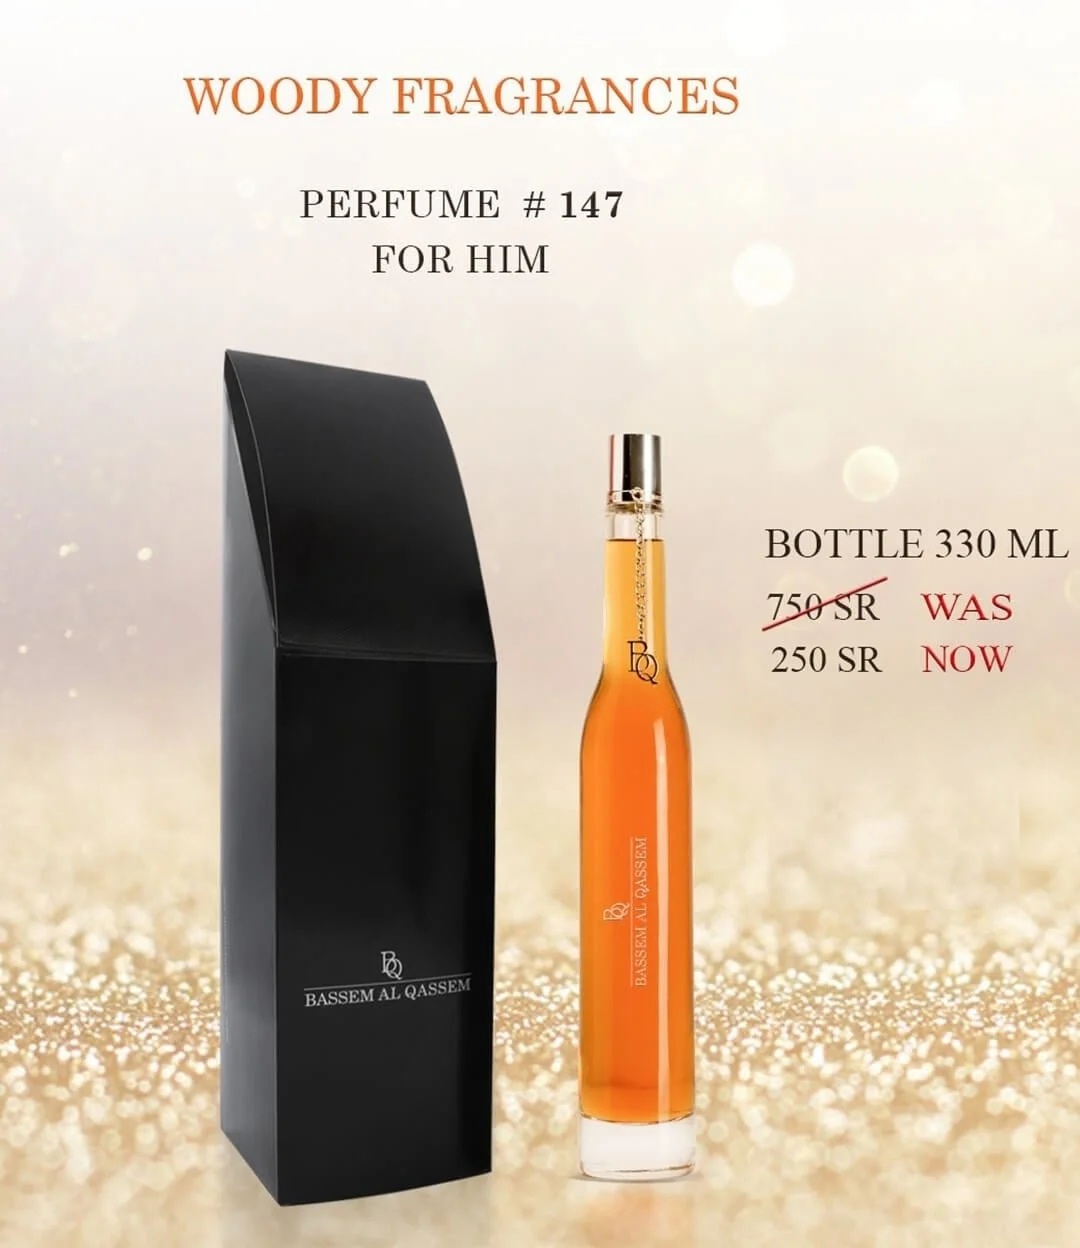 Perfume #147 Woody Fragrance for Him by Bassem Al Qassem 